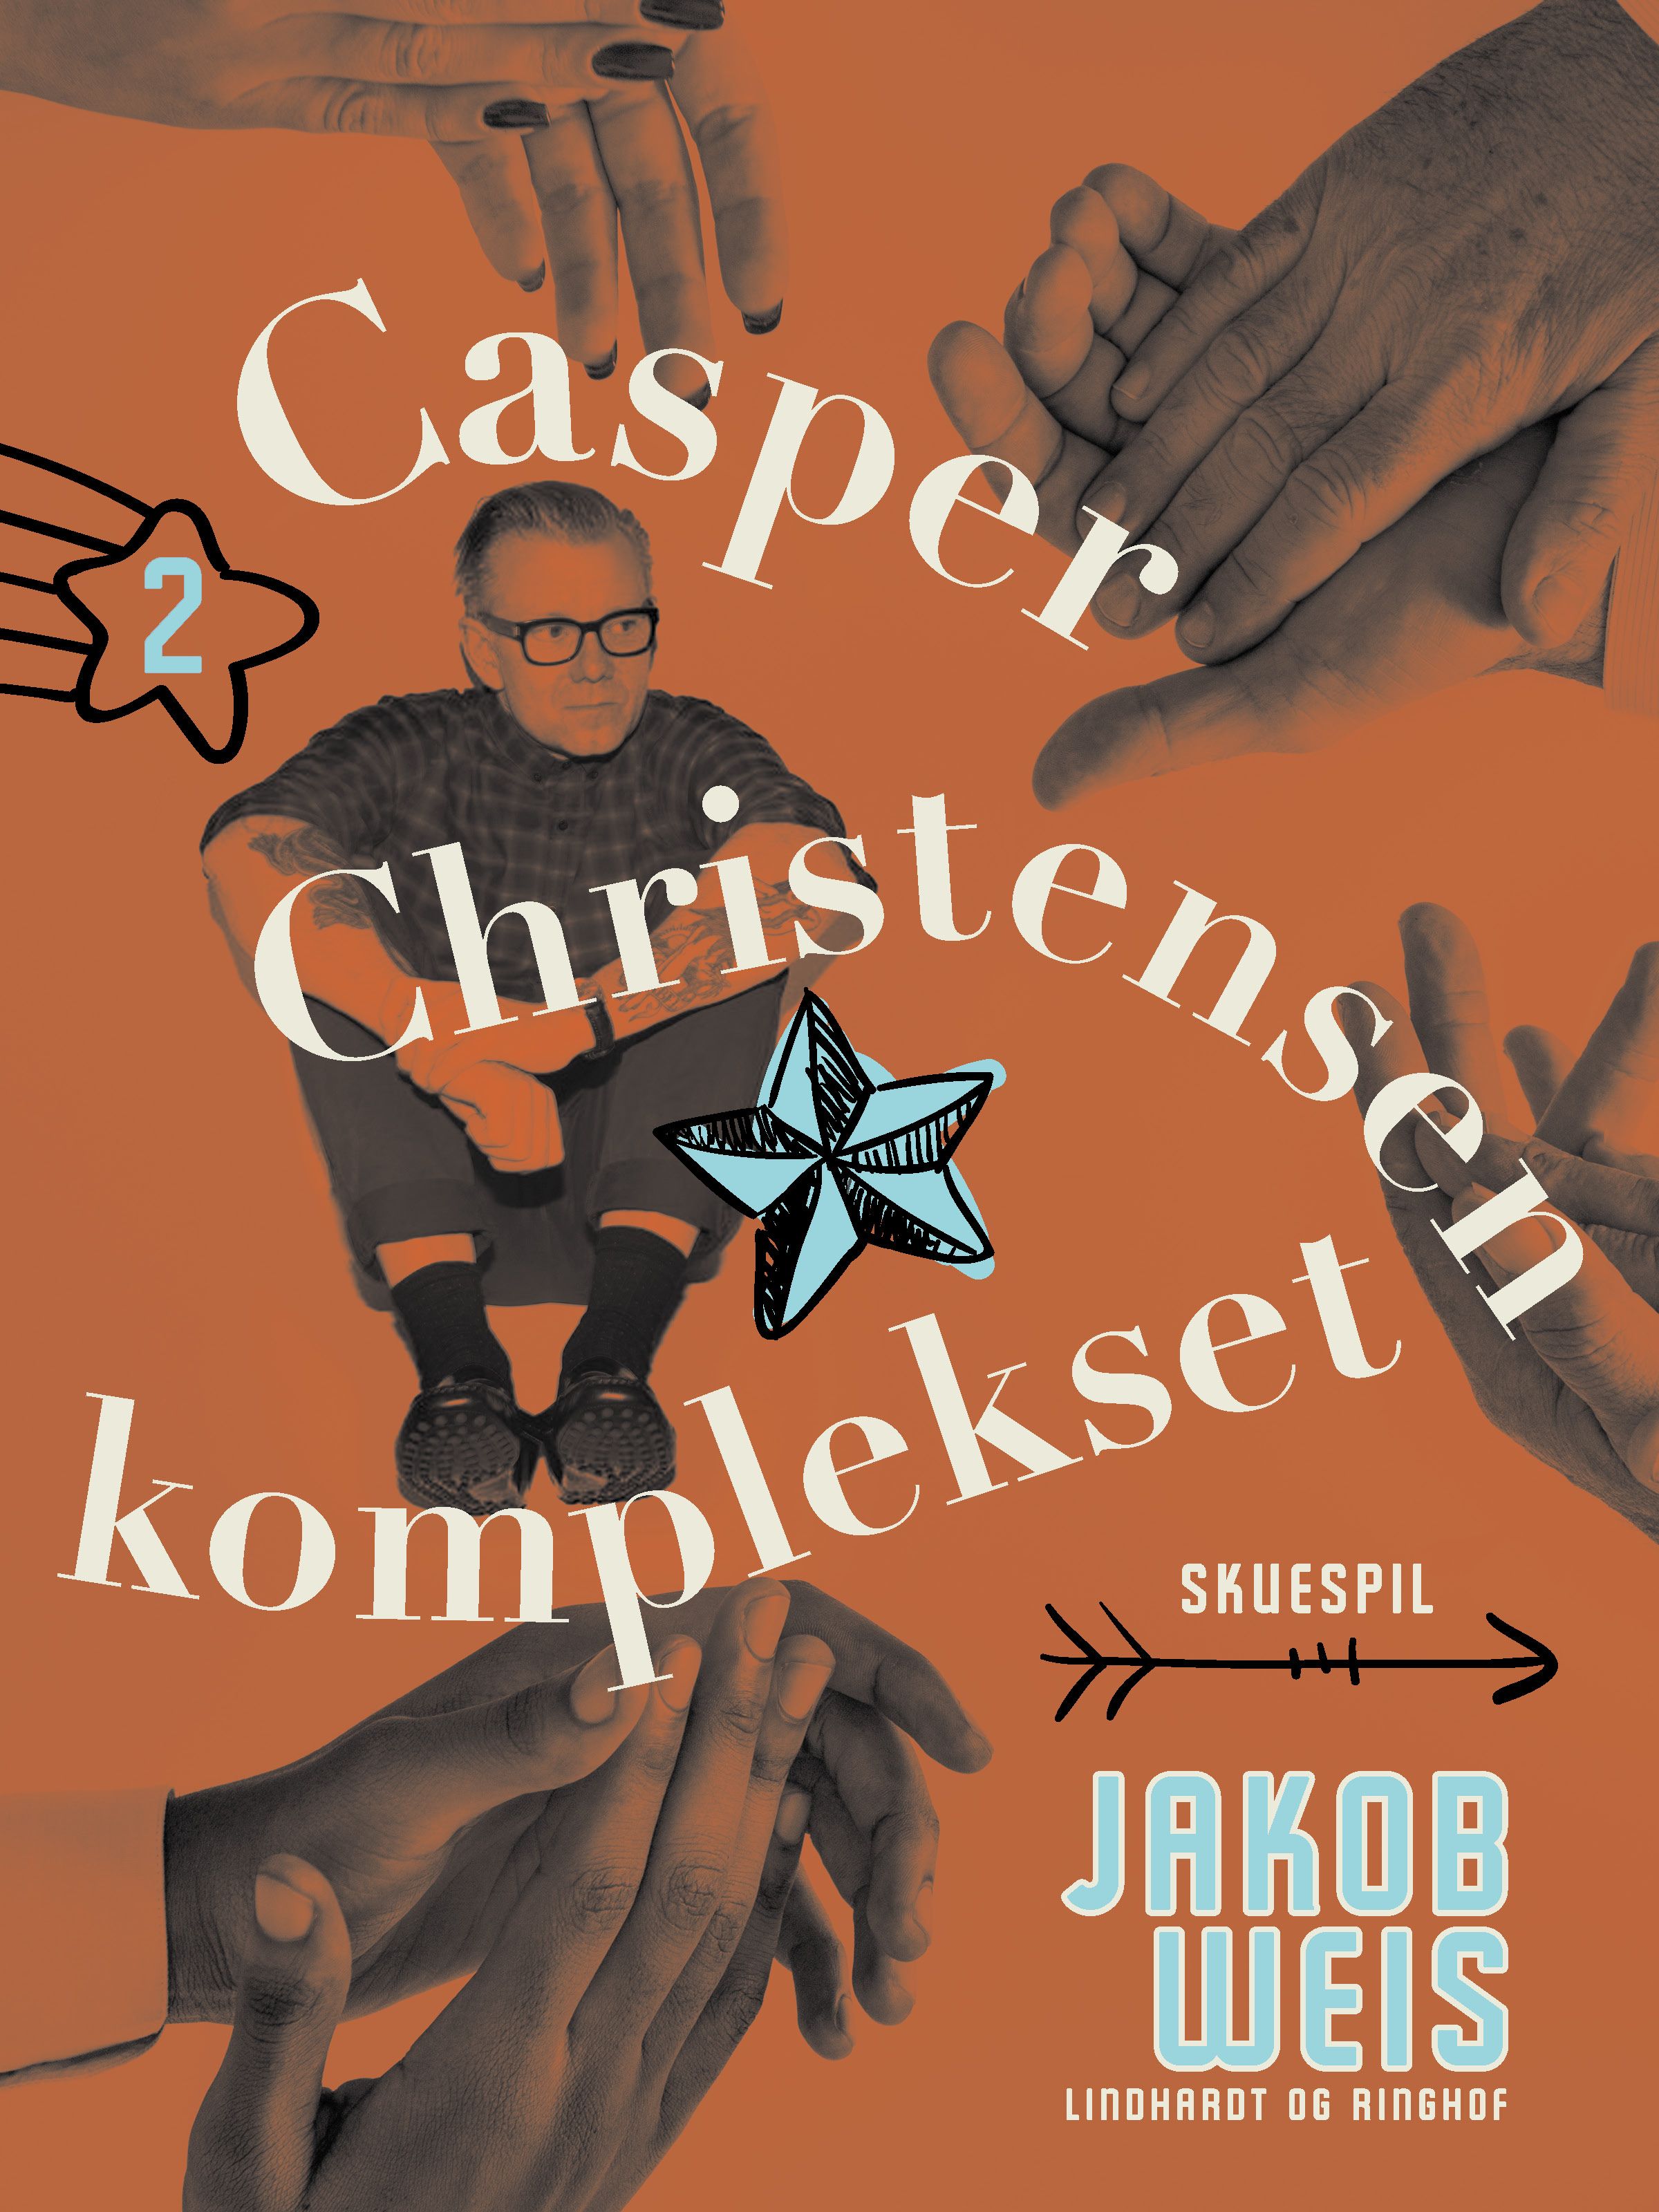 Casper Christensen komplekset, e-bok av Jakob Weis